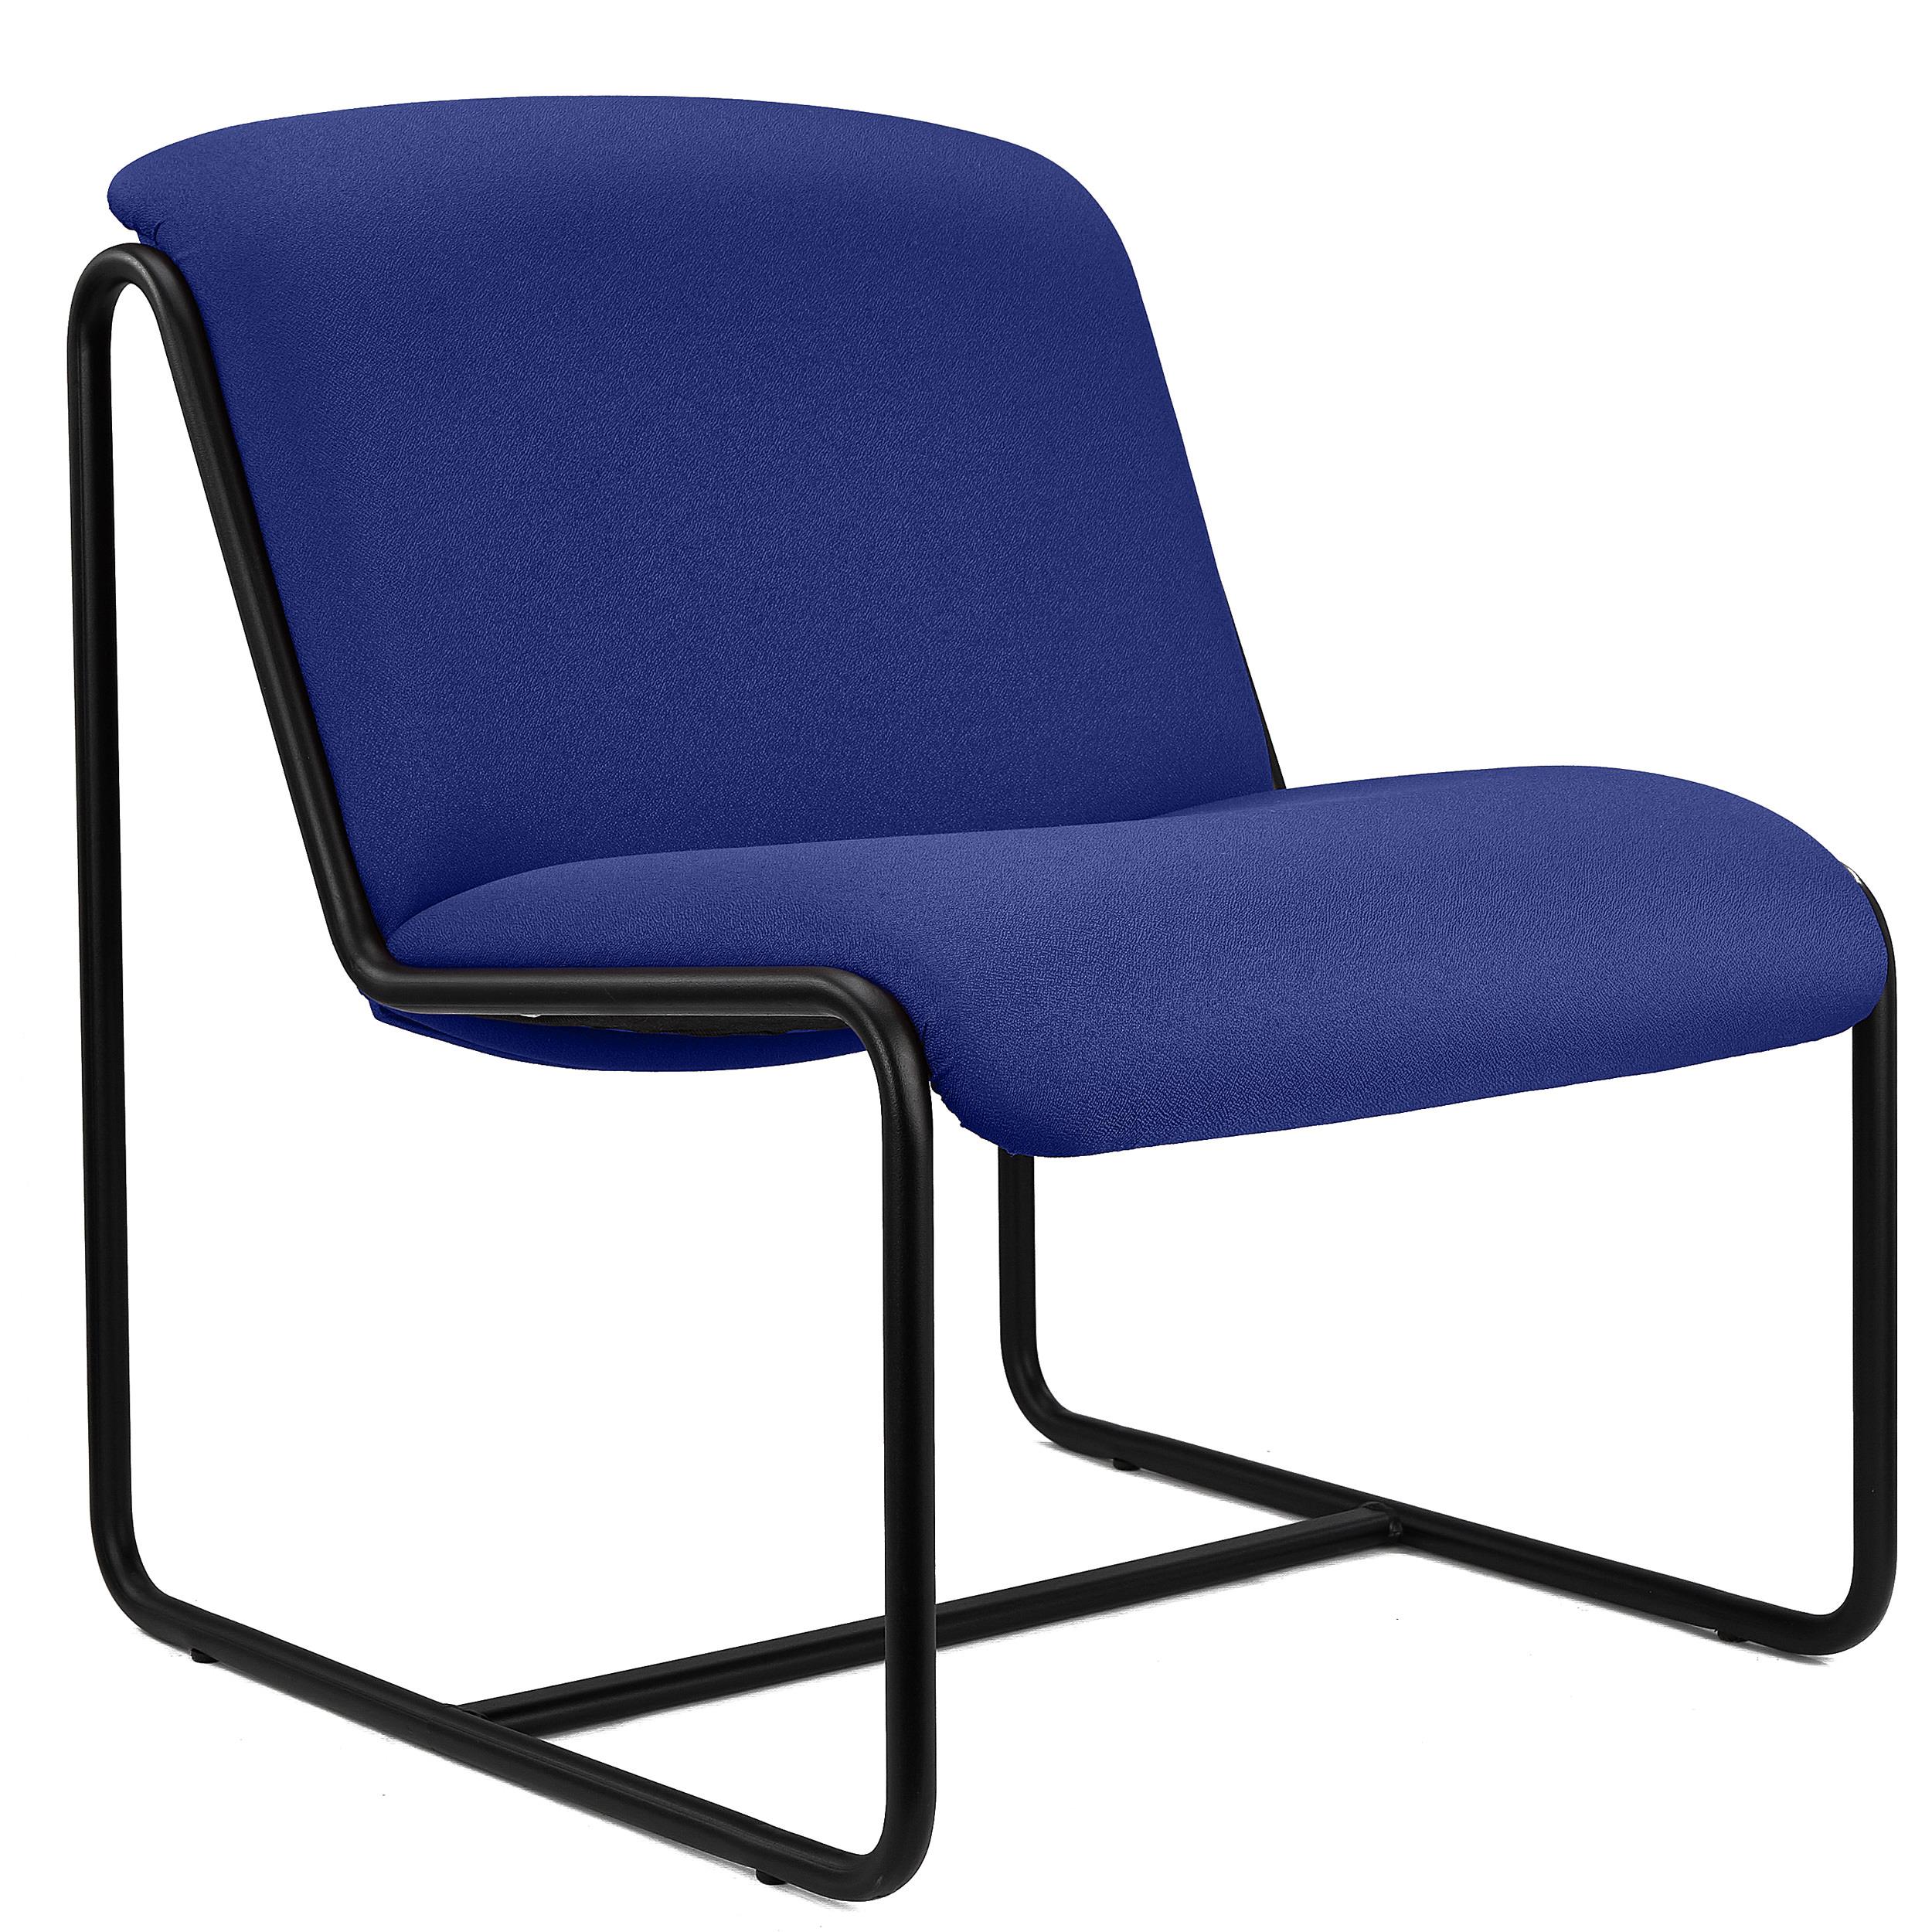 Chaise visiteur LIMA, Design Exclusif, Structure Métallique, en Tissu Bleu Foncé